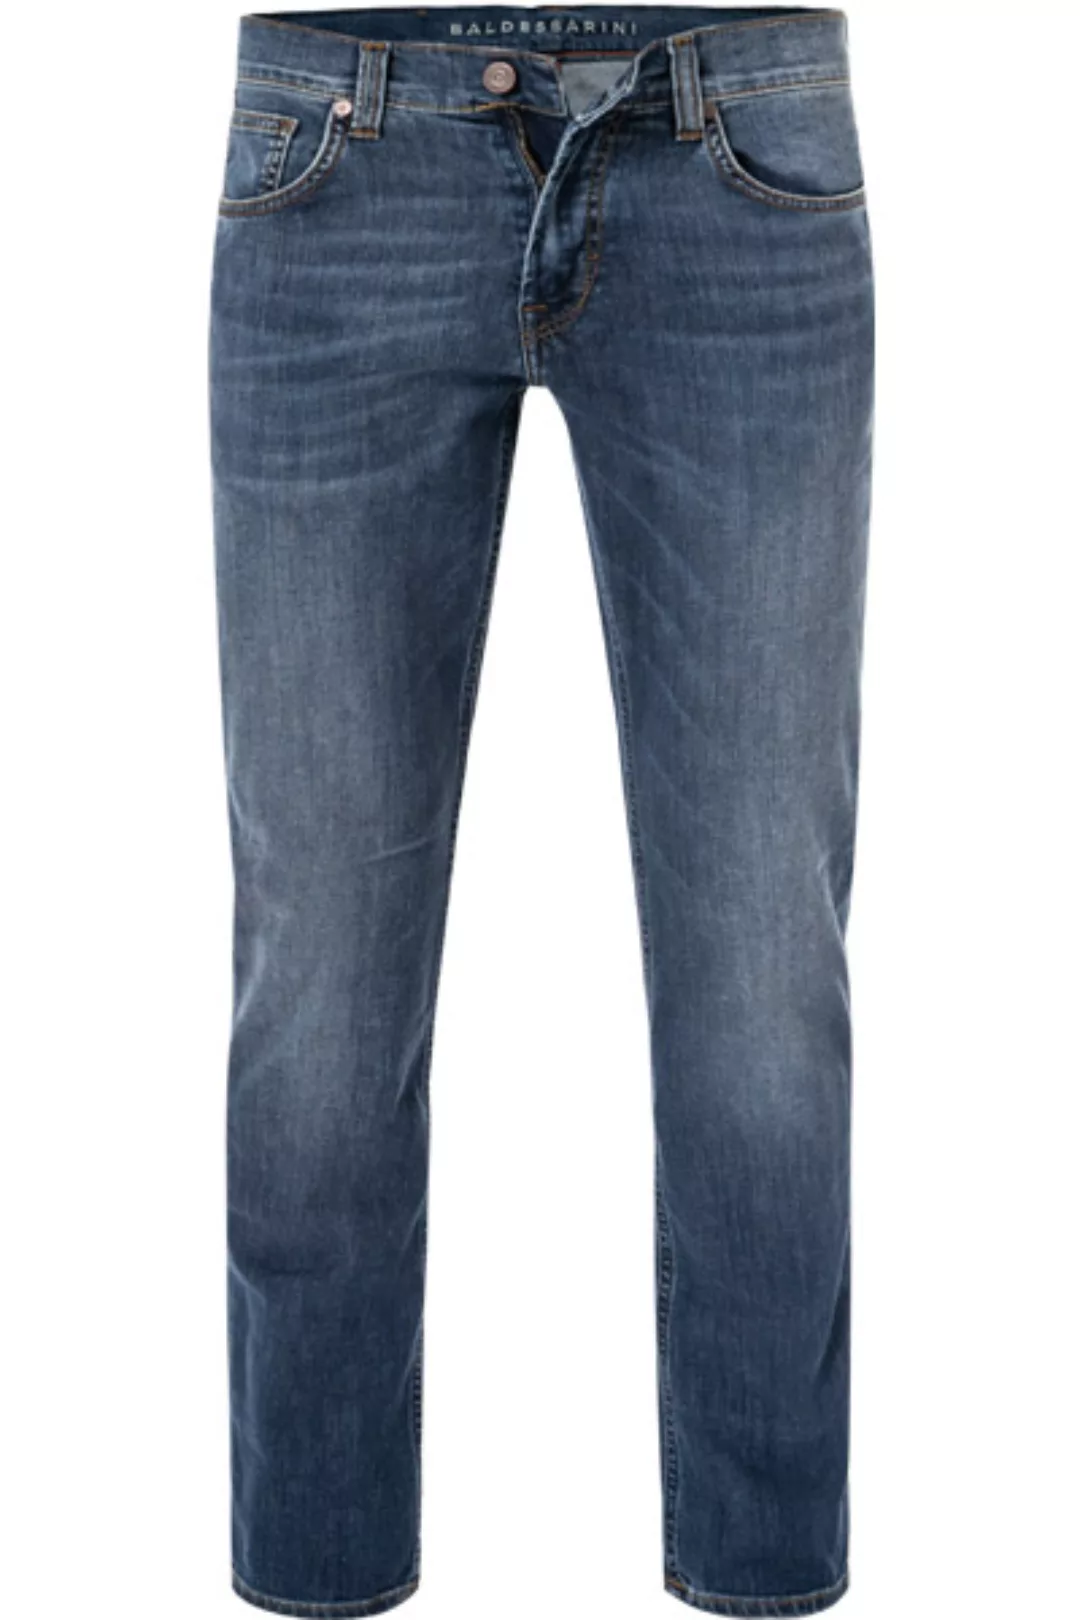 BALDESSARINI Jeans dunkelblau B1 16511.1247/6855 günstig online kaufen